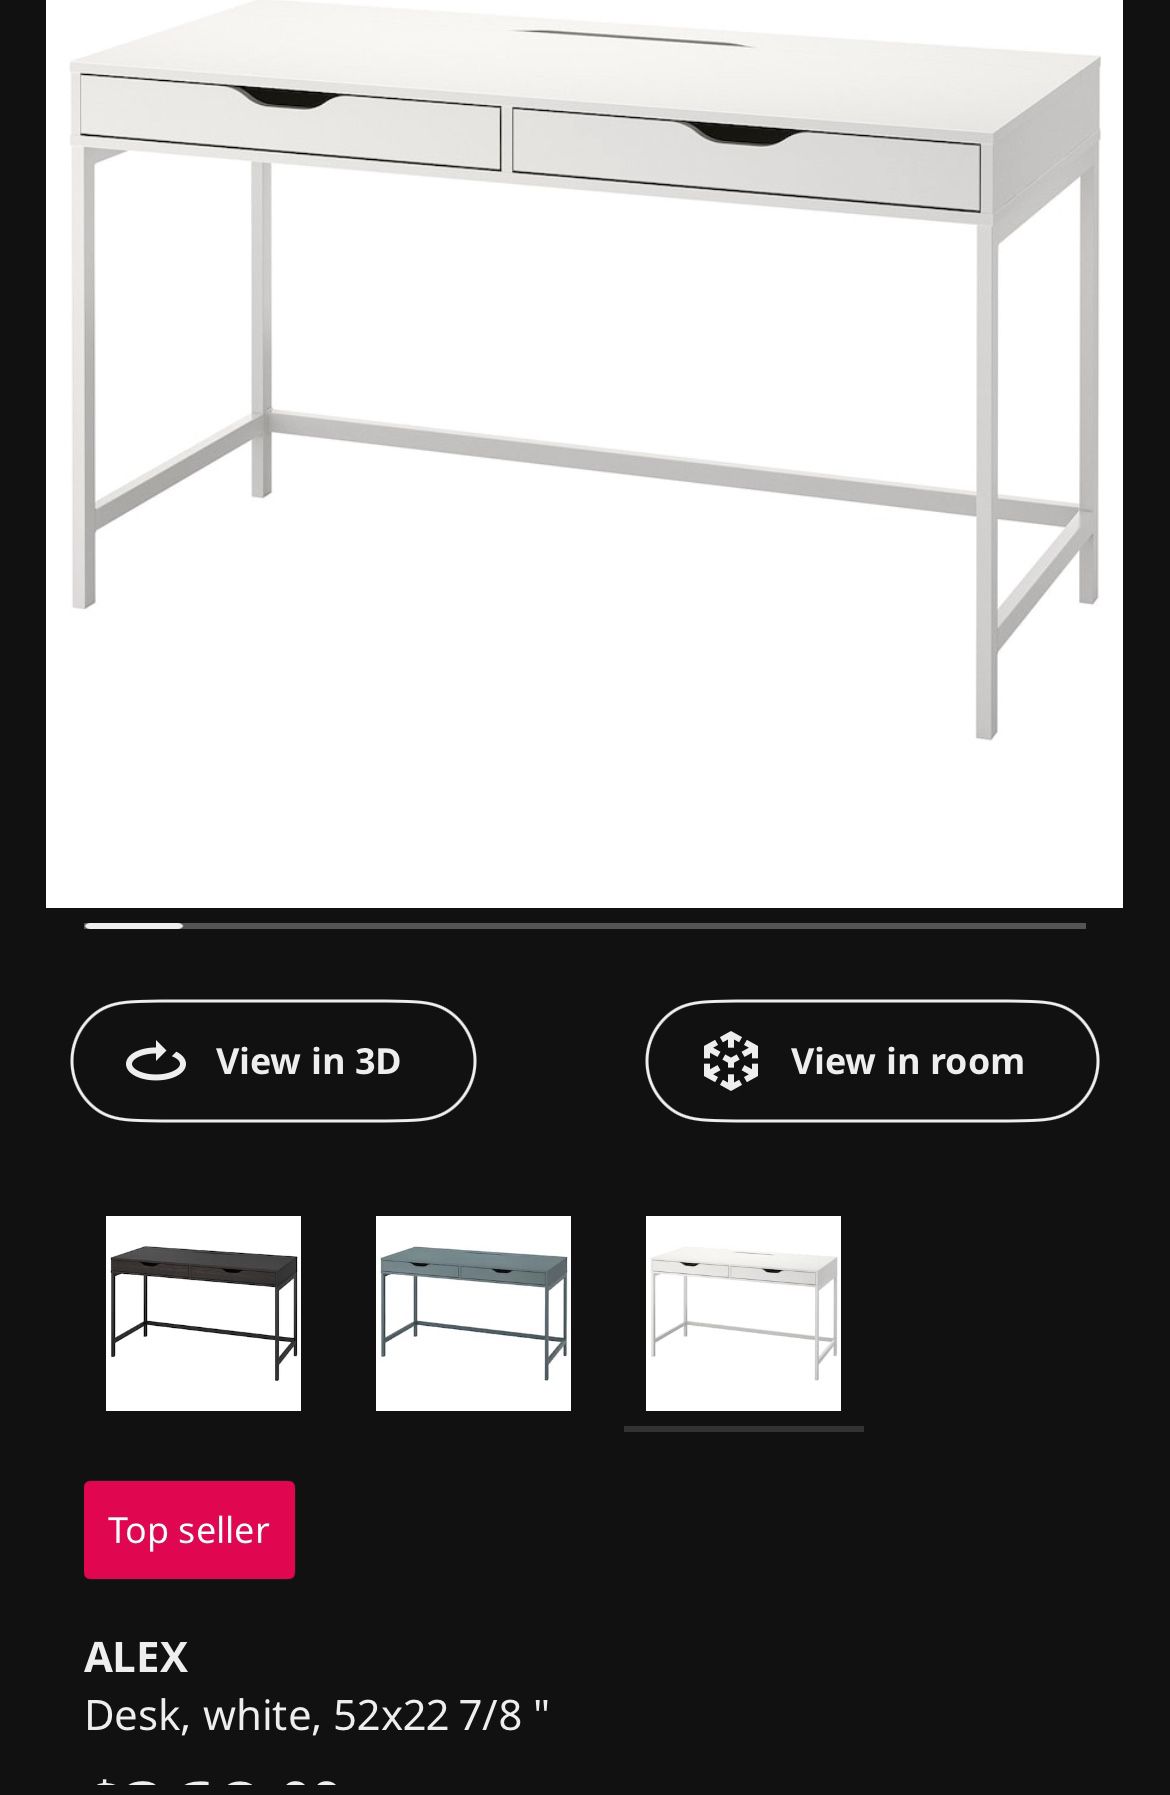 IKEA Desk: The Alex 